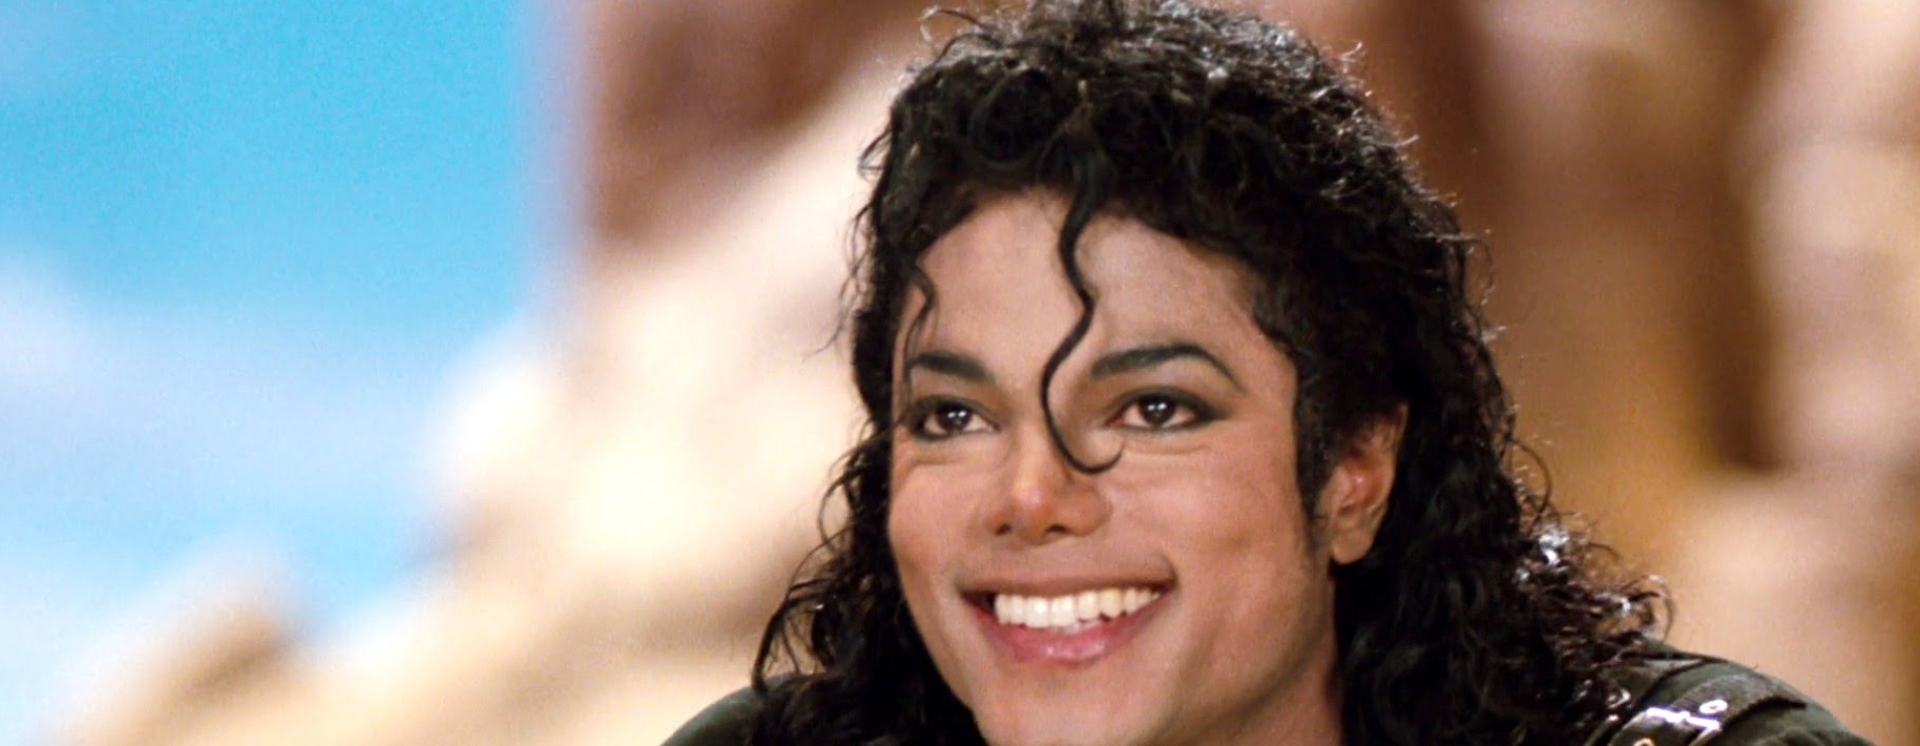 Μάικλ Τζάκσον: Μόνος στη “Χώρα του Πρέπει”